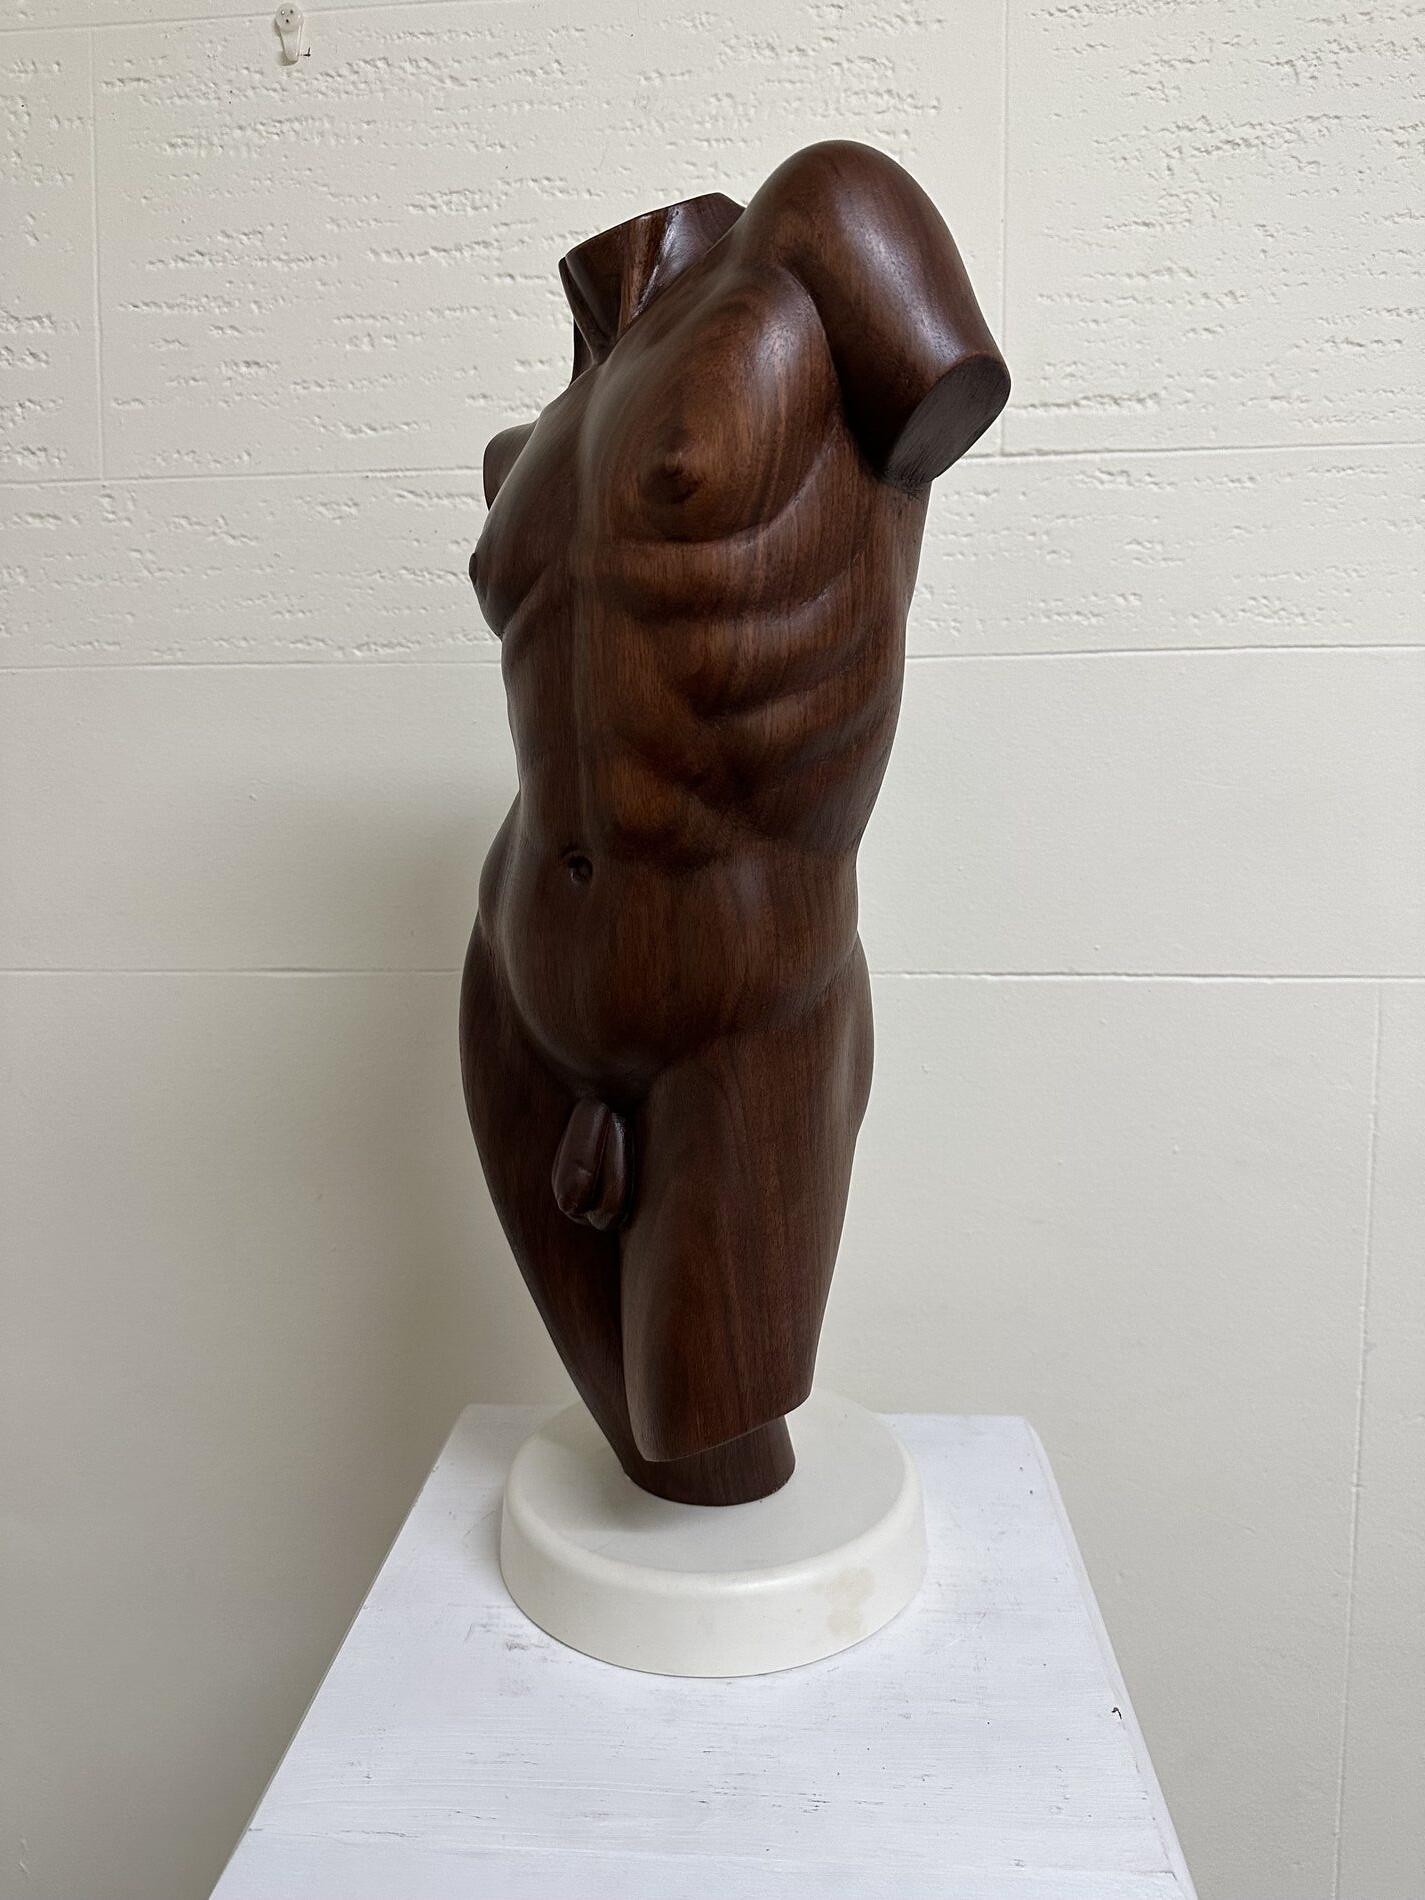 A wooden sculpture of a naked man on a pedestal.